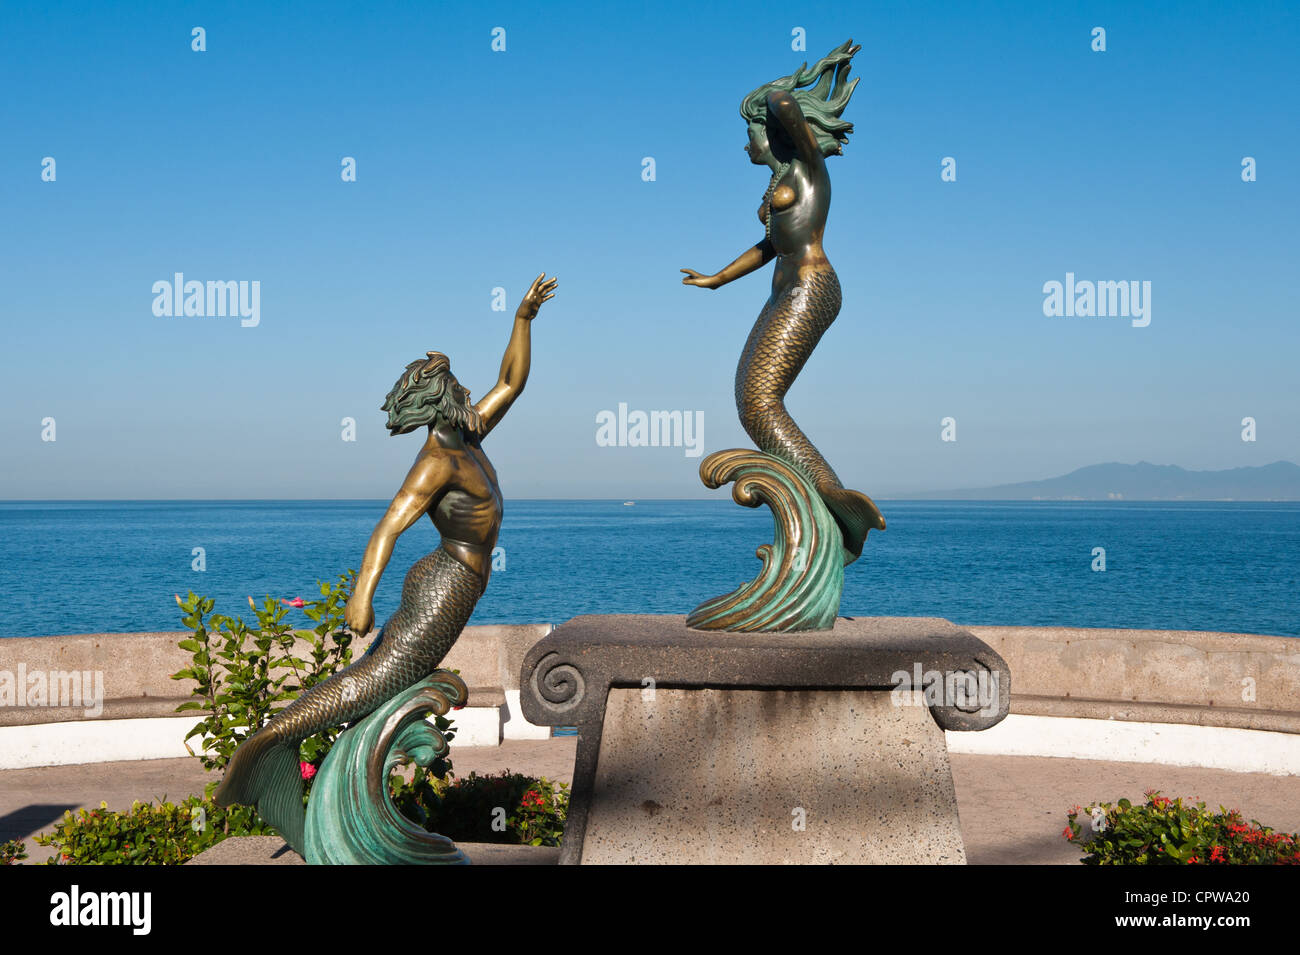 Messico, Puerto Vallarta. Triton e Nereida scultura sul Malecon, Rotunda del mare, Playa Los Muertos, Puerto Vallarta, Messico. Foto Stock